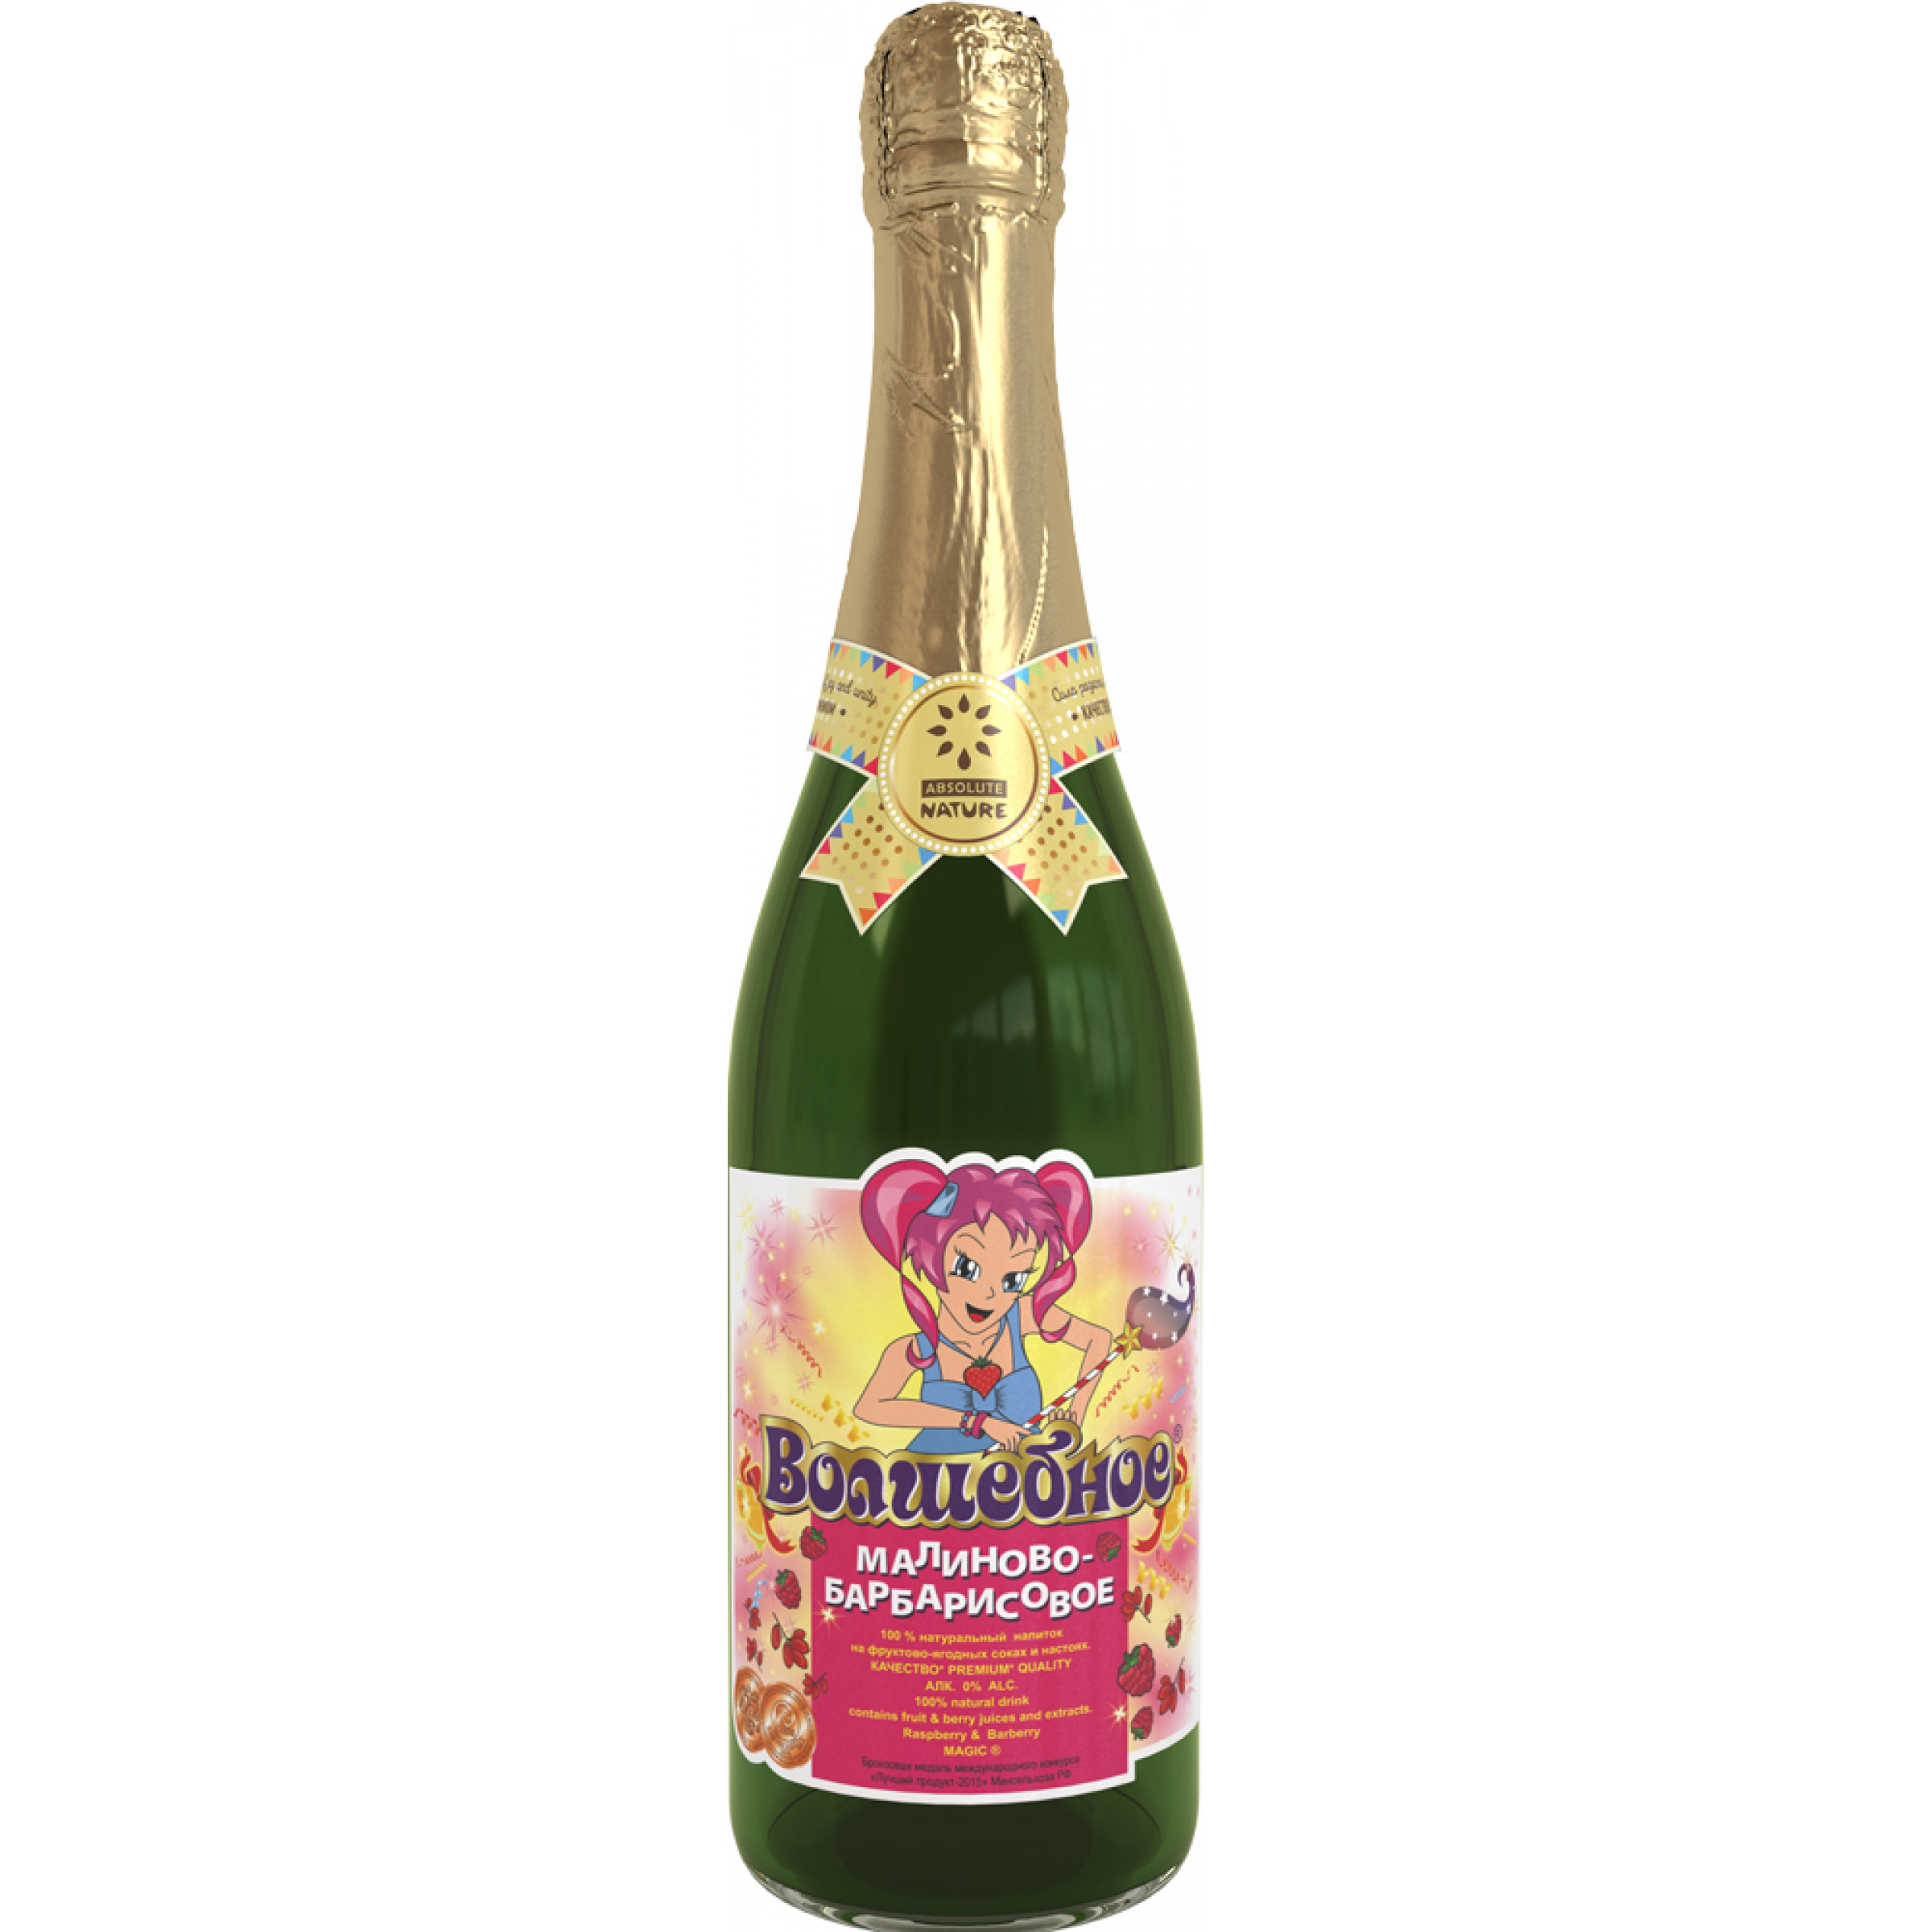 Детское Шампанское Малиново-Барбарисовое Волшебное, 750 мл